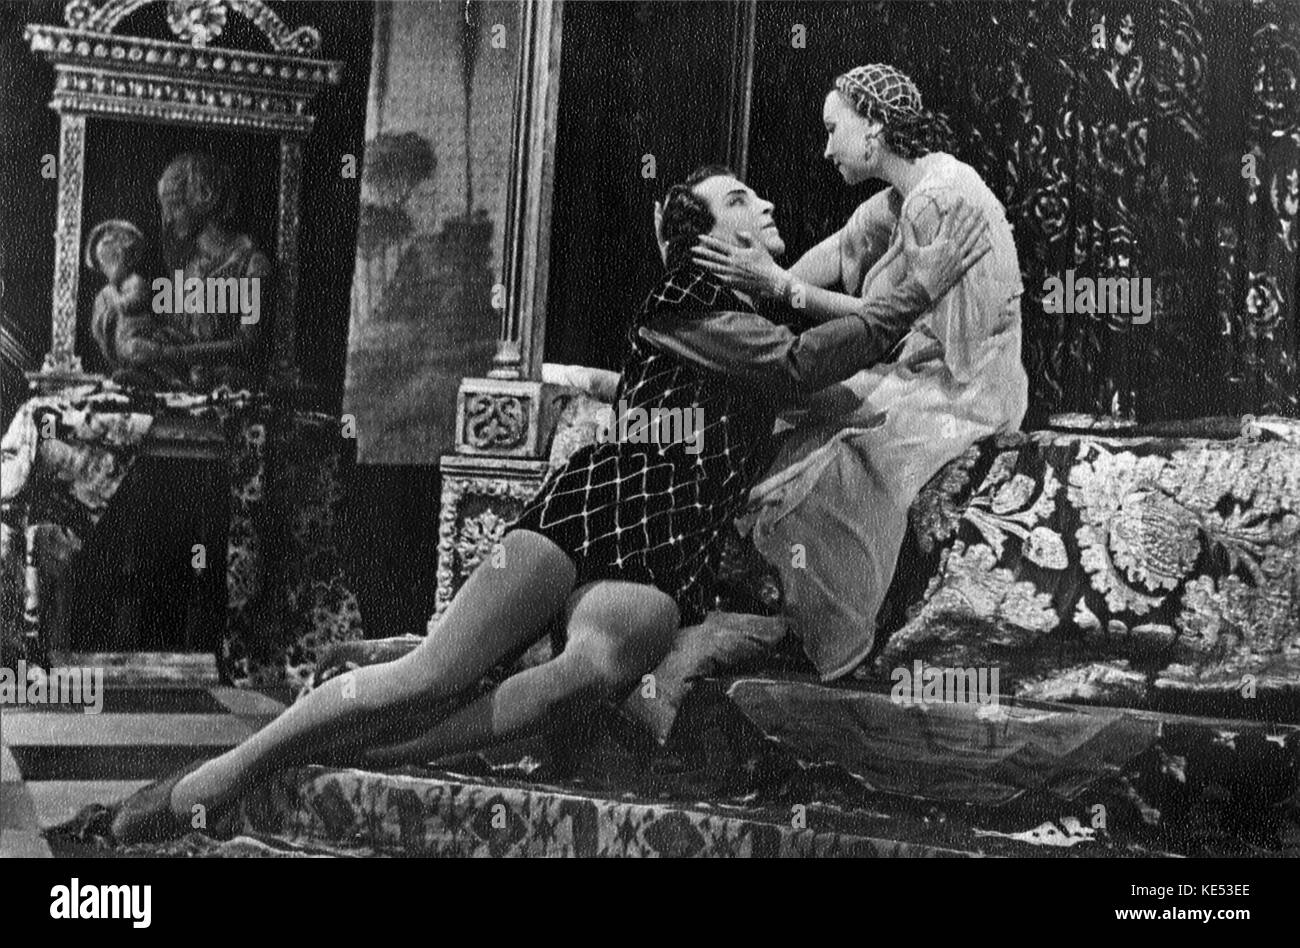 "Romeo und Julia": Ballett von Sergej Prokofjew auf William Shakespeares "Romeo und Julia". Galina Ulanova und Juri schdanow als Romeo und Julia GU: 8 Januar 1910 - 21. März 1998. Russischen Komponisten, 27. April 1891 - vom 5. März 1953. Stockfoto